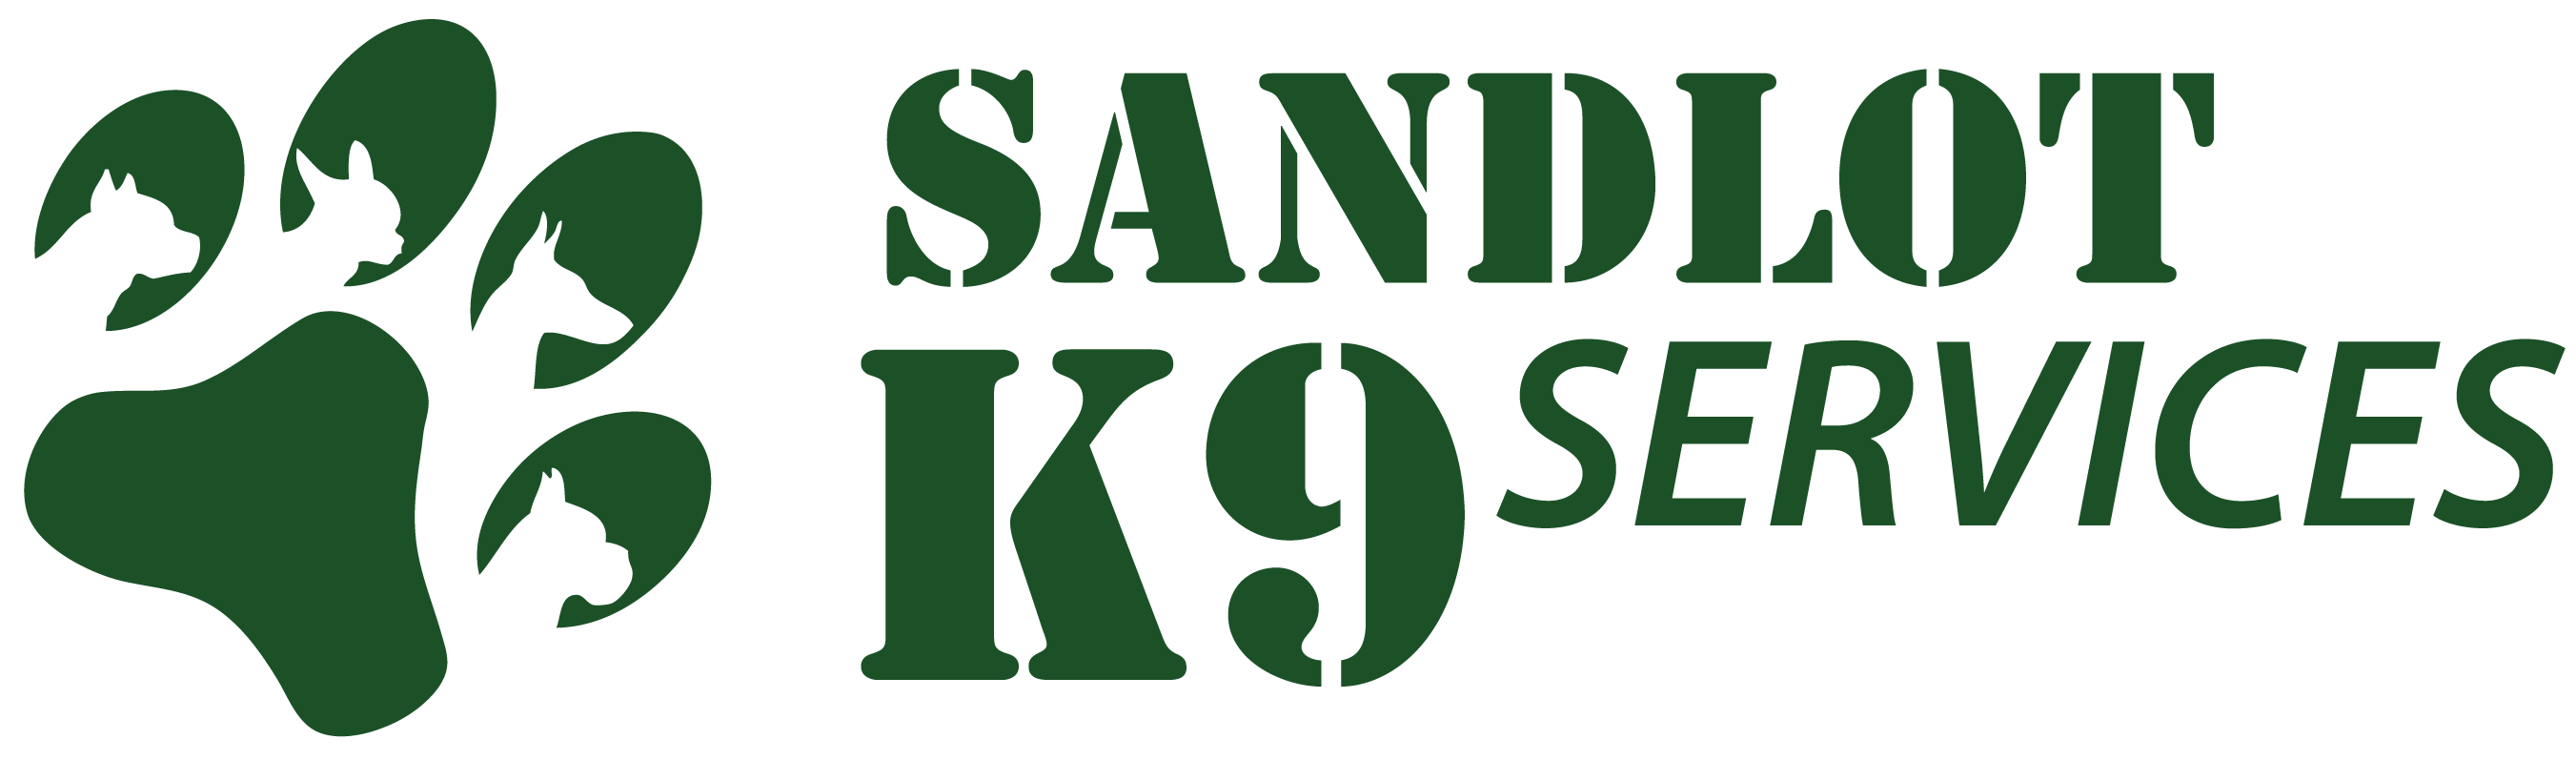 Sandlot K9